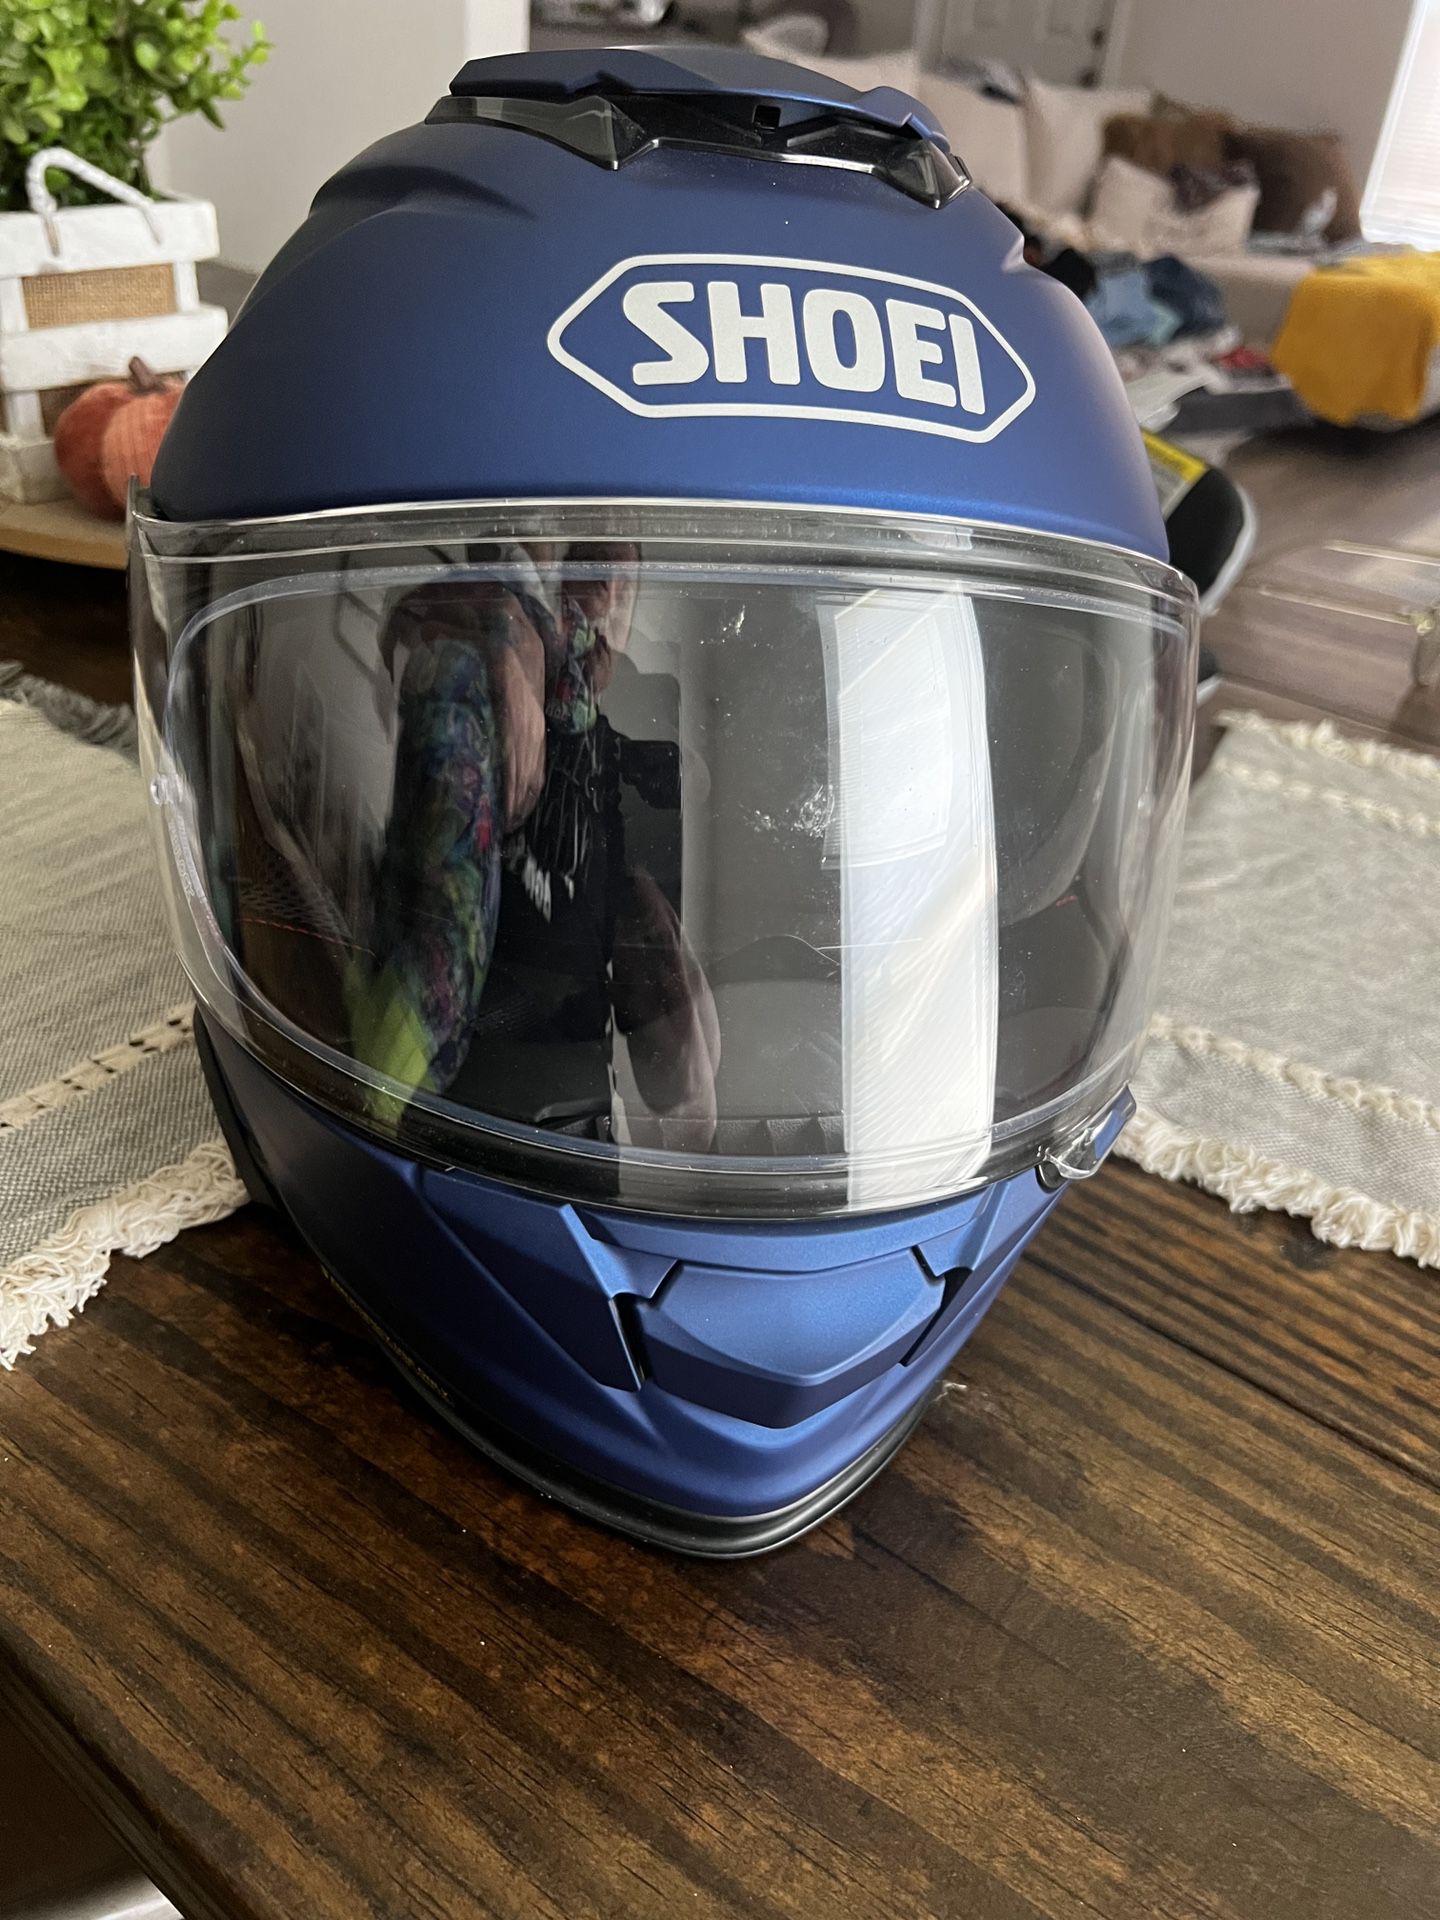 SHOEI motorcycle Helmet